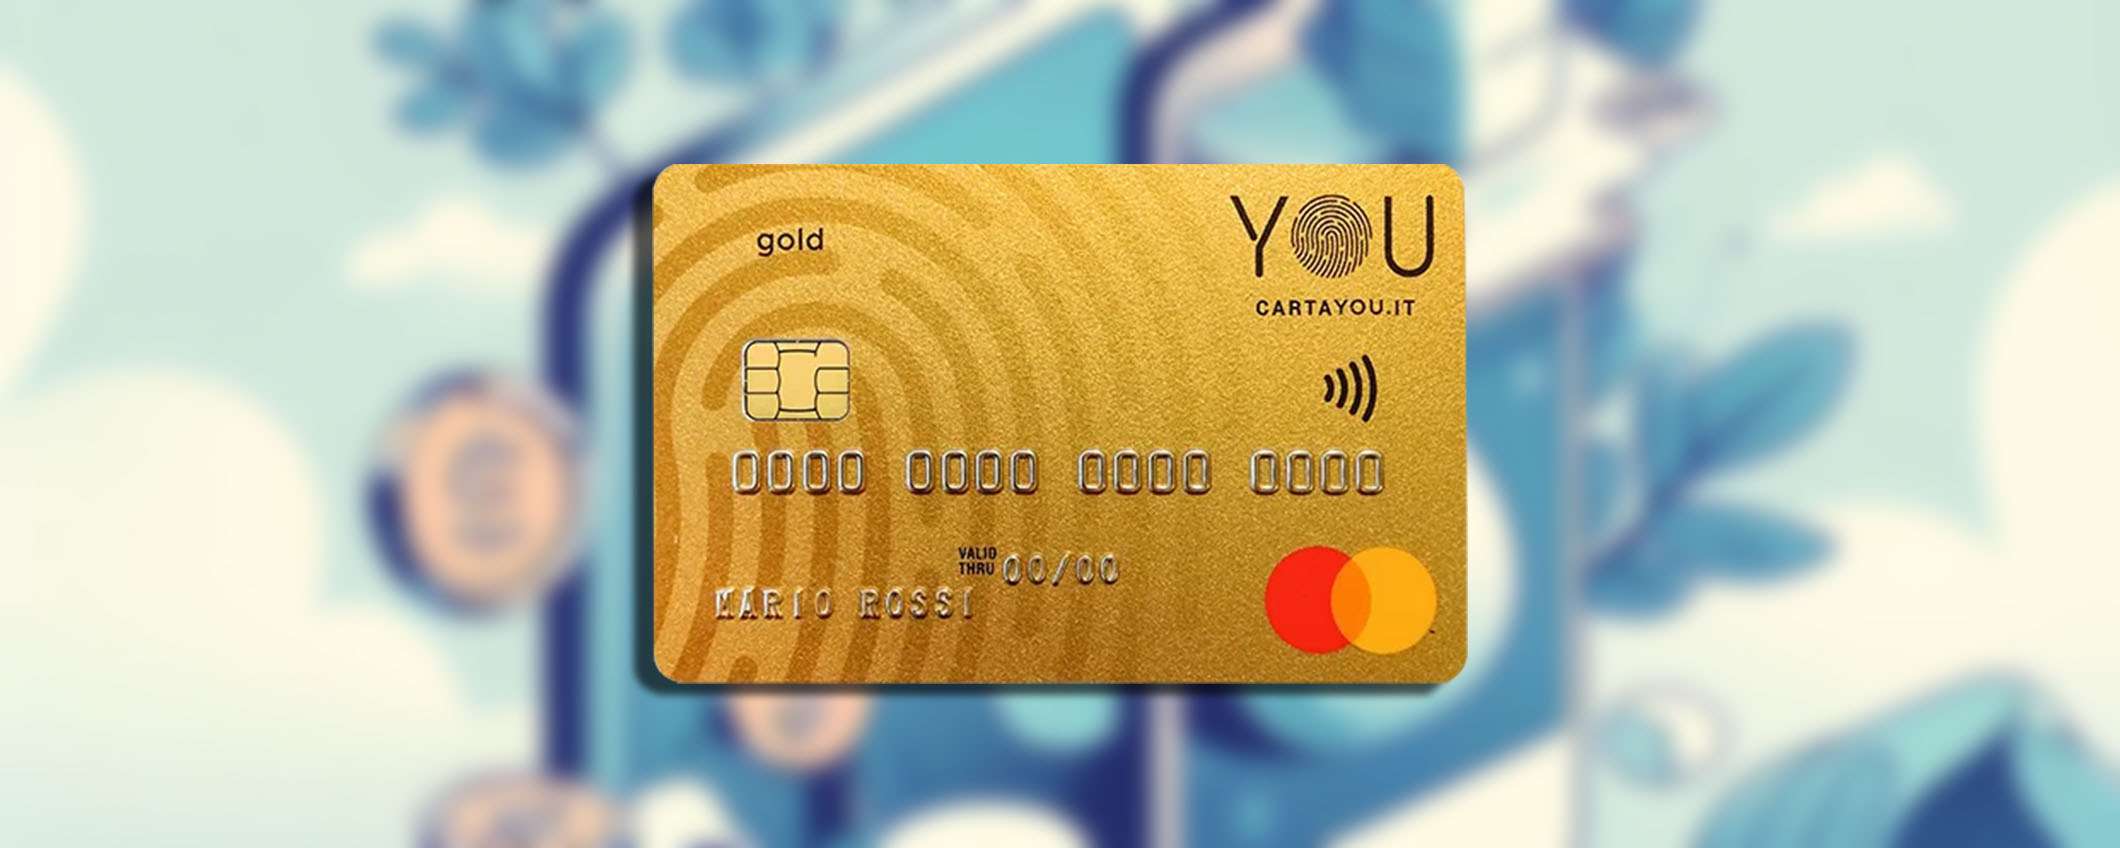 Carta YOU: carta di credito gratis che include un'assicurazione